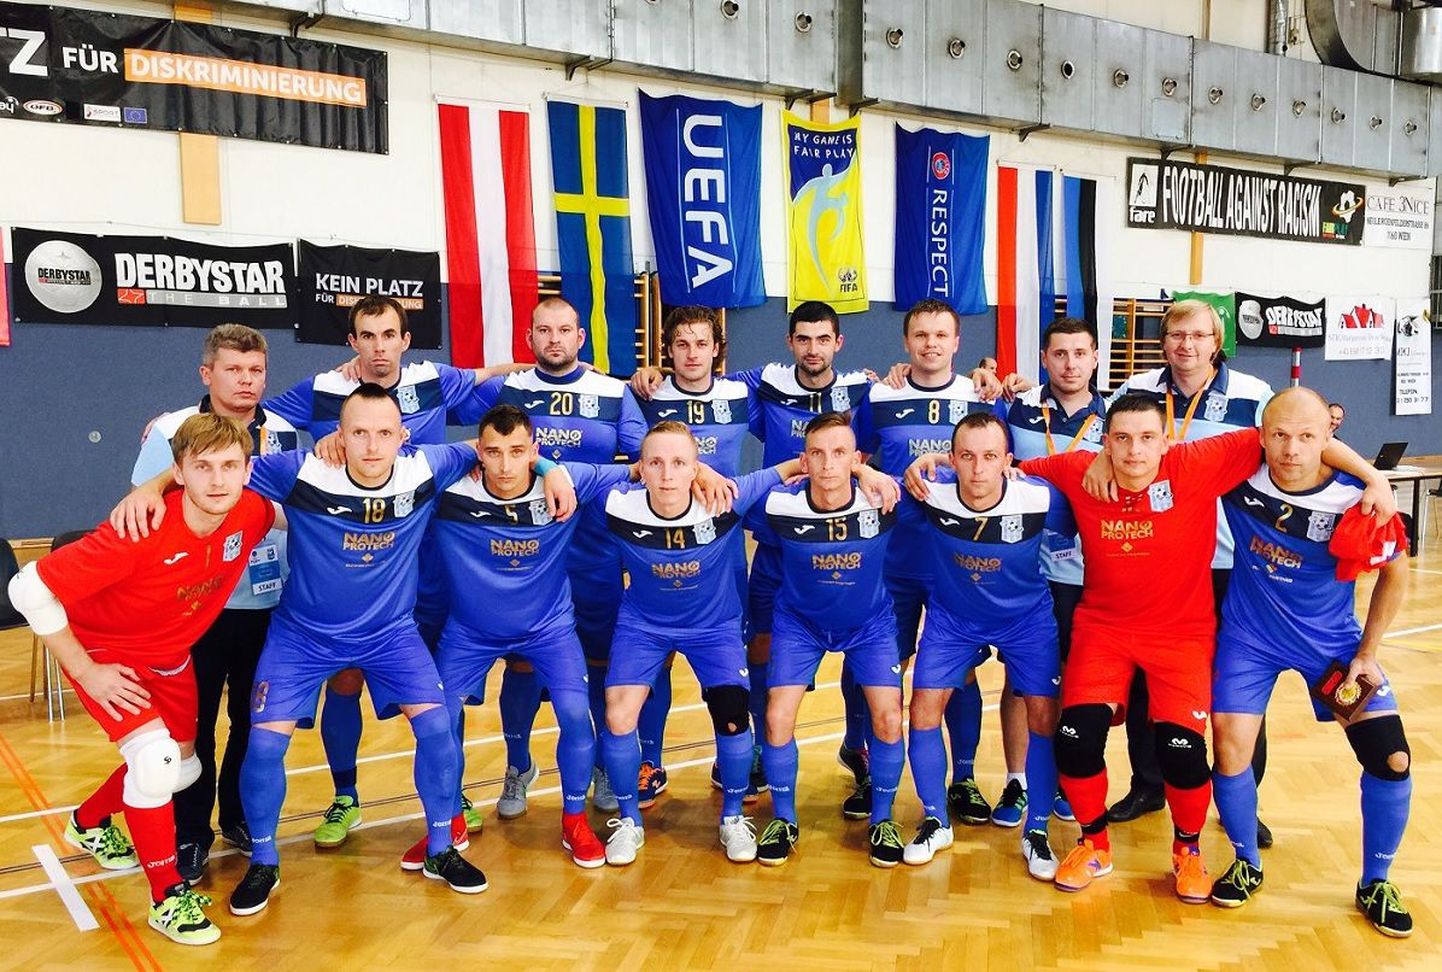 Таллиннский "Космос" на групповом квалификационном турнире Кубка УЕФА.